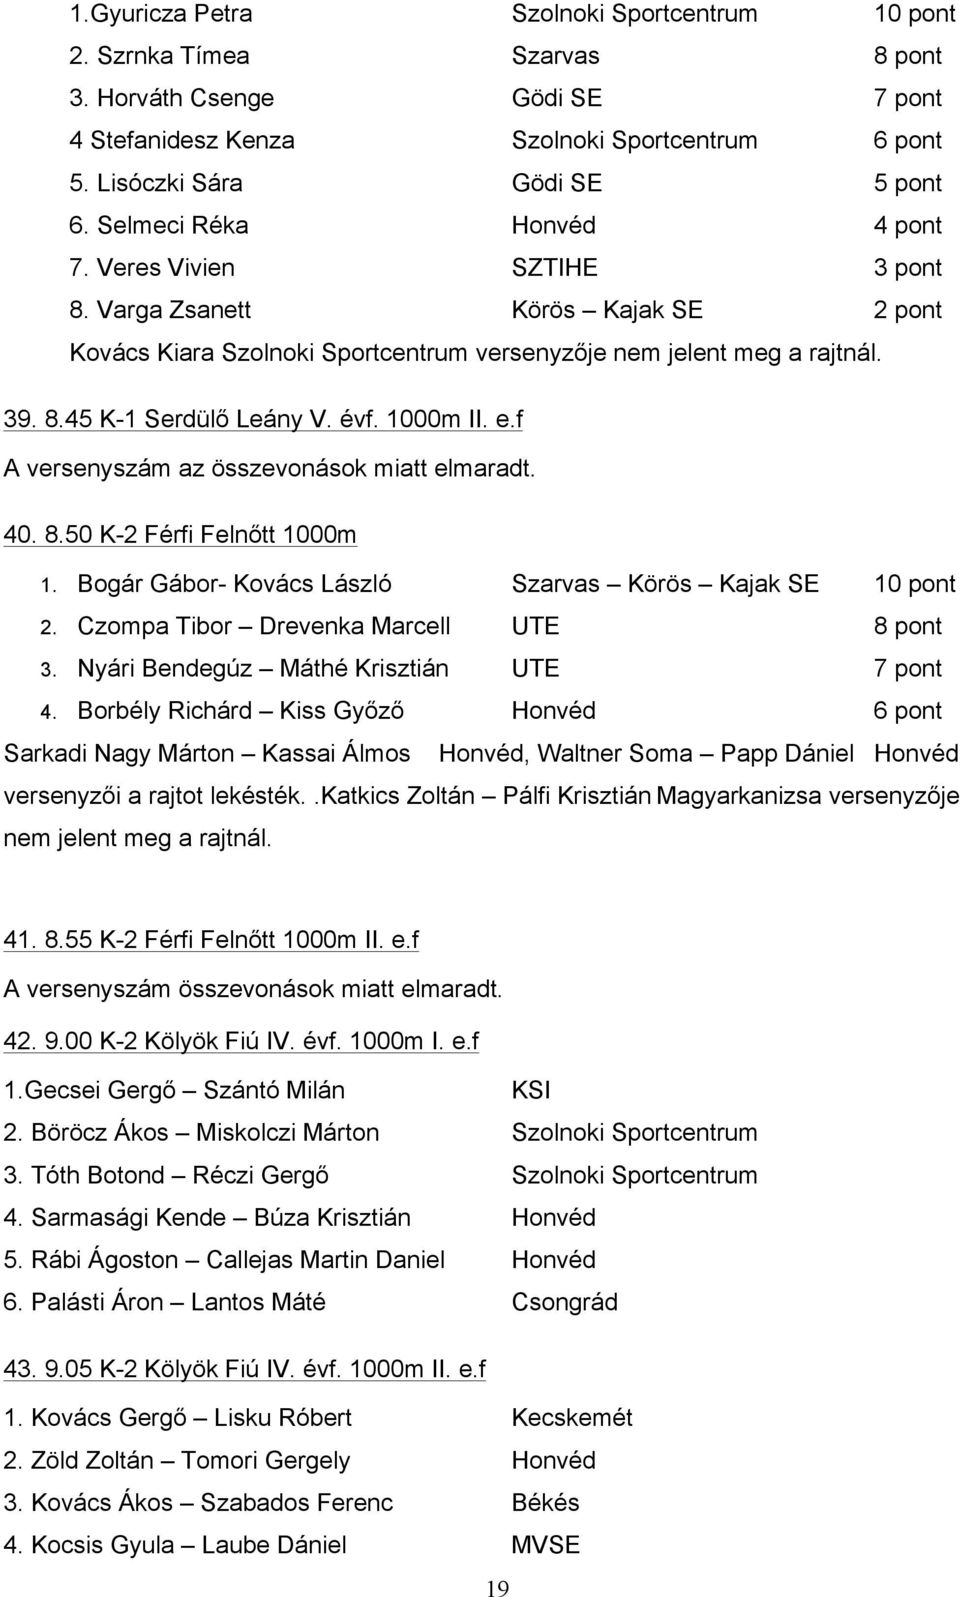 Varga Zsanett Körös Kajak SE 2 pont Kovács Kiara Szolnoki Sportcentrum versenyzője nem jelent meg a rajtnál. 39. 8.45 K-1 Serdülő Leány V. évf. 1000m II. e.